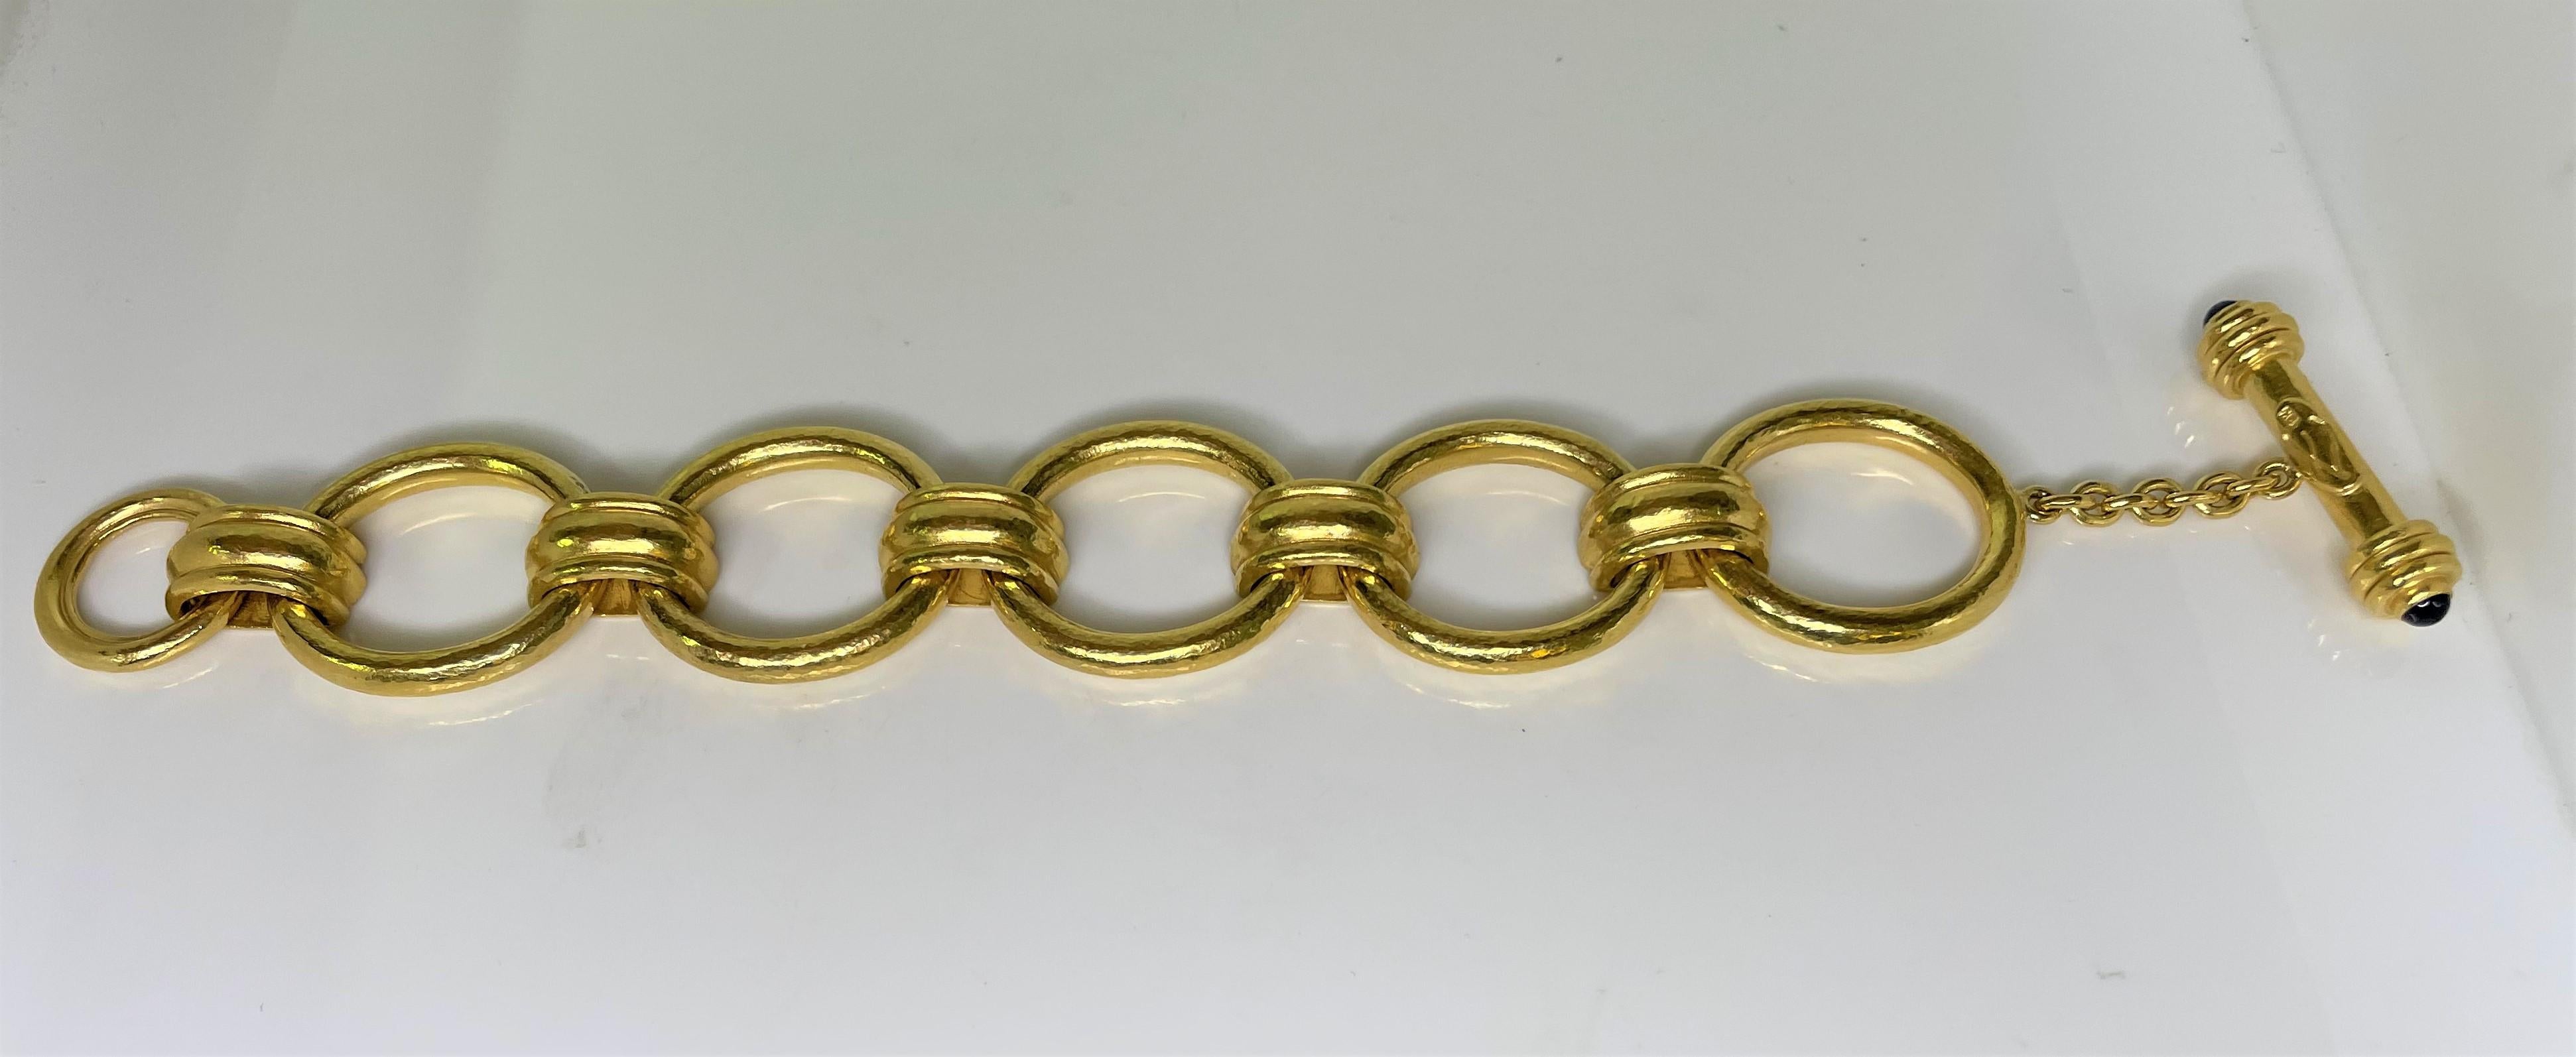 De la créatrice Elizabeth Locke, bracelet à maillons en or massif martelé de 19 carats avec boucle à ardillon.  
La boucle est munie d'un saphir cabochon à chaque extrémité. 
Estampillé de la marque du créateur.
Le bracelet mesure environ 7,5 pouces